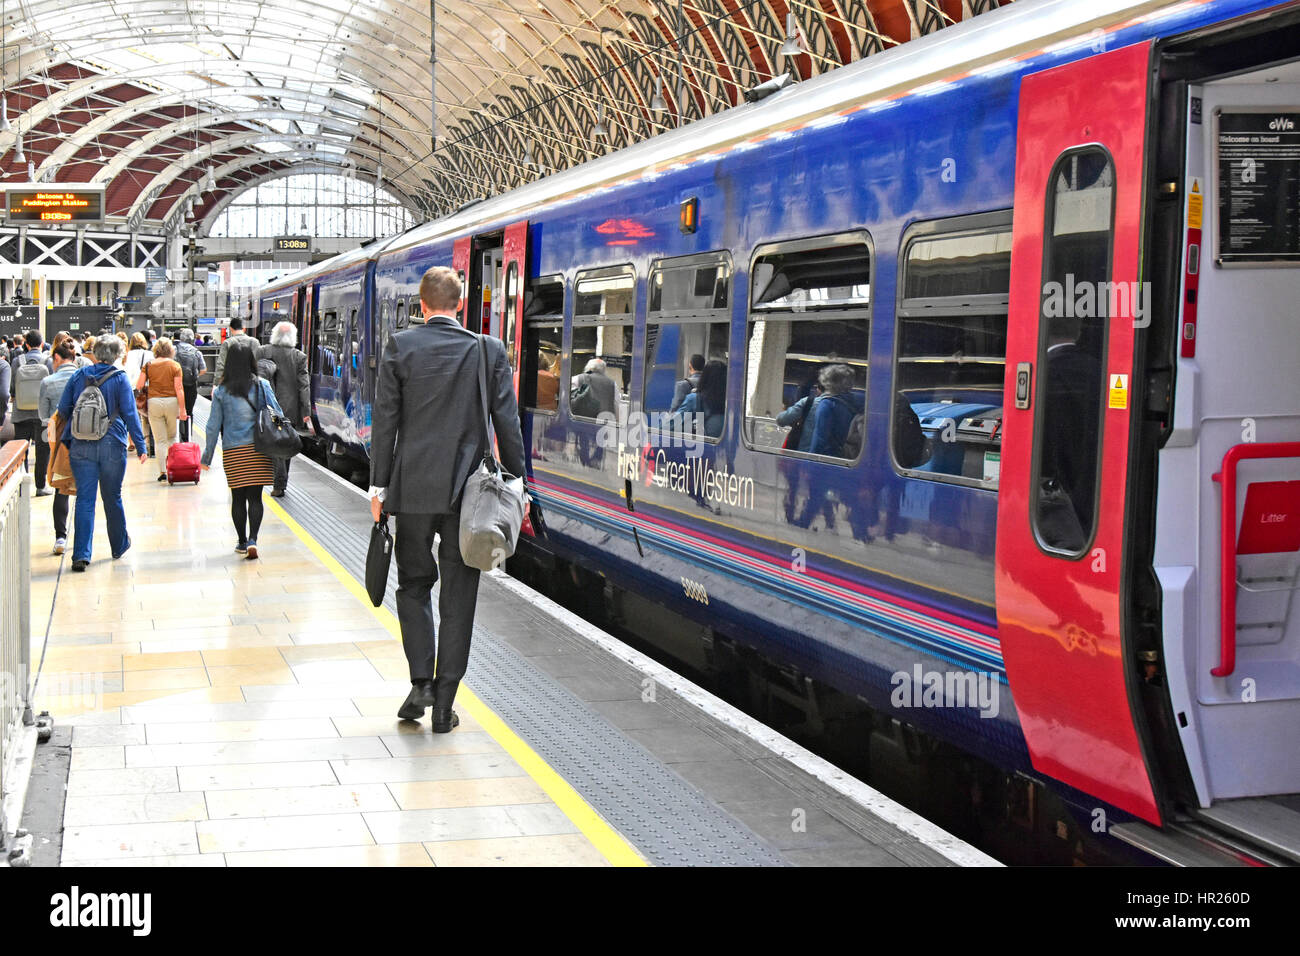 Erste Zugverbindung der FirstGroup nach Great Western kam am Bahnhof Paddington Station London UK Bahnsteig an. Geschäftsreisende steigen zu Fuß zu den Ausgängen aus Stockfoto